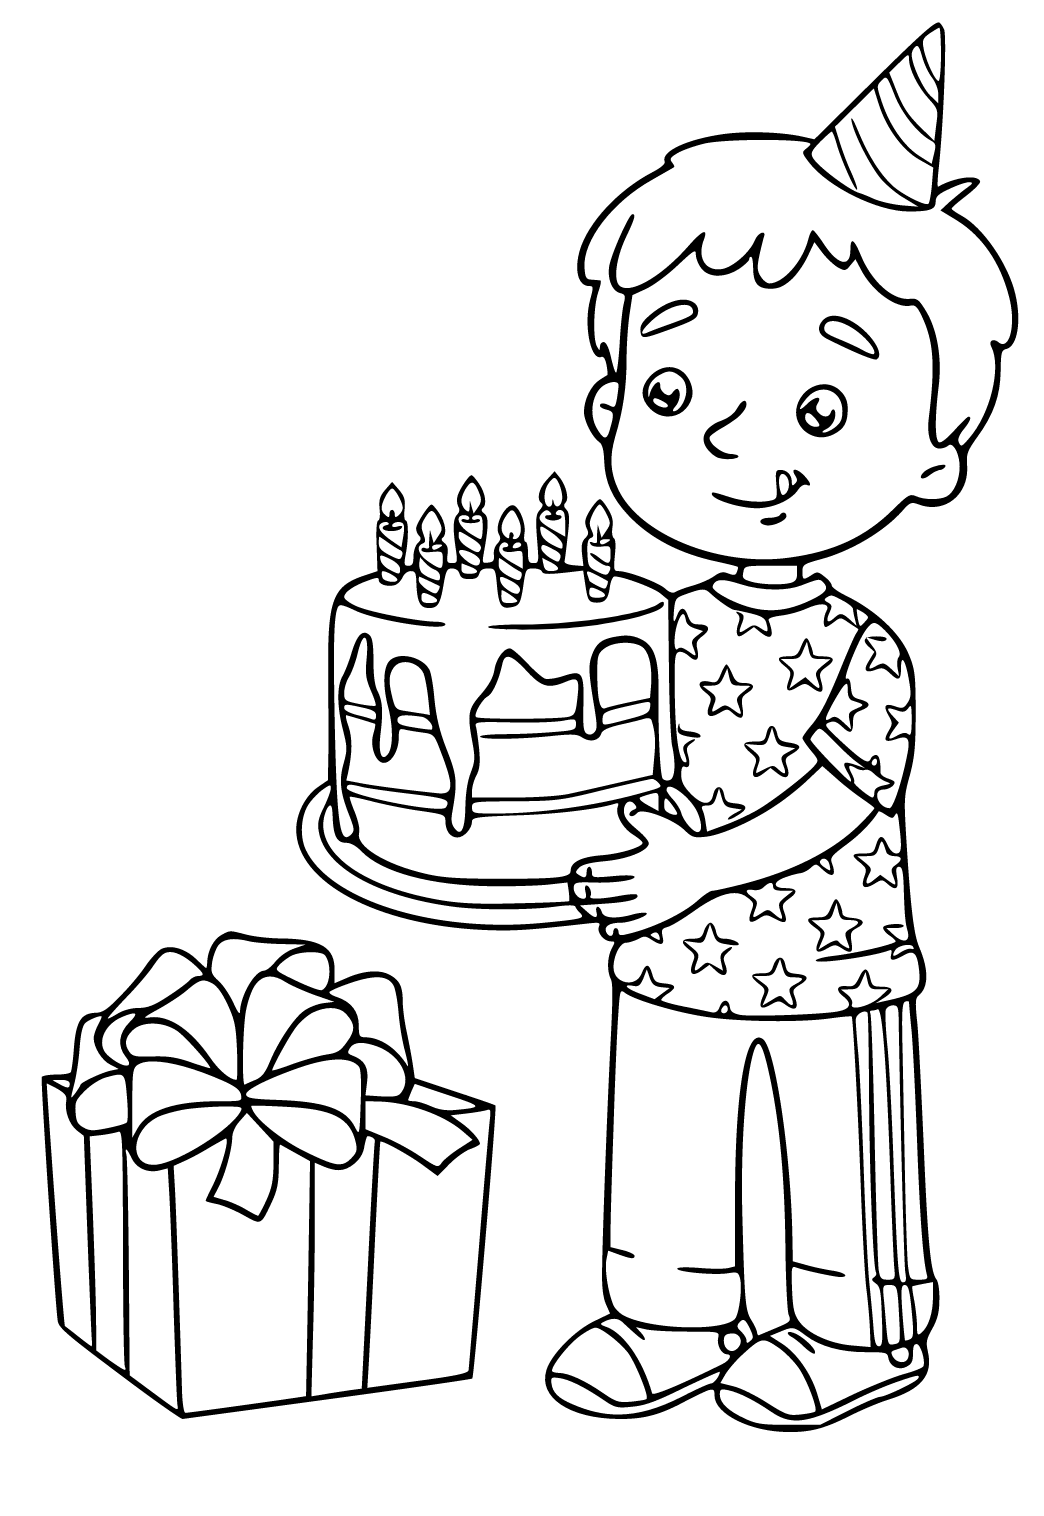 Pastel de cumpleaños para colorear ilustración para niños y adultos